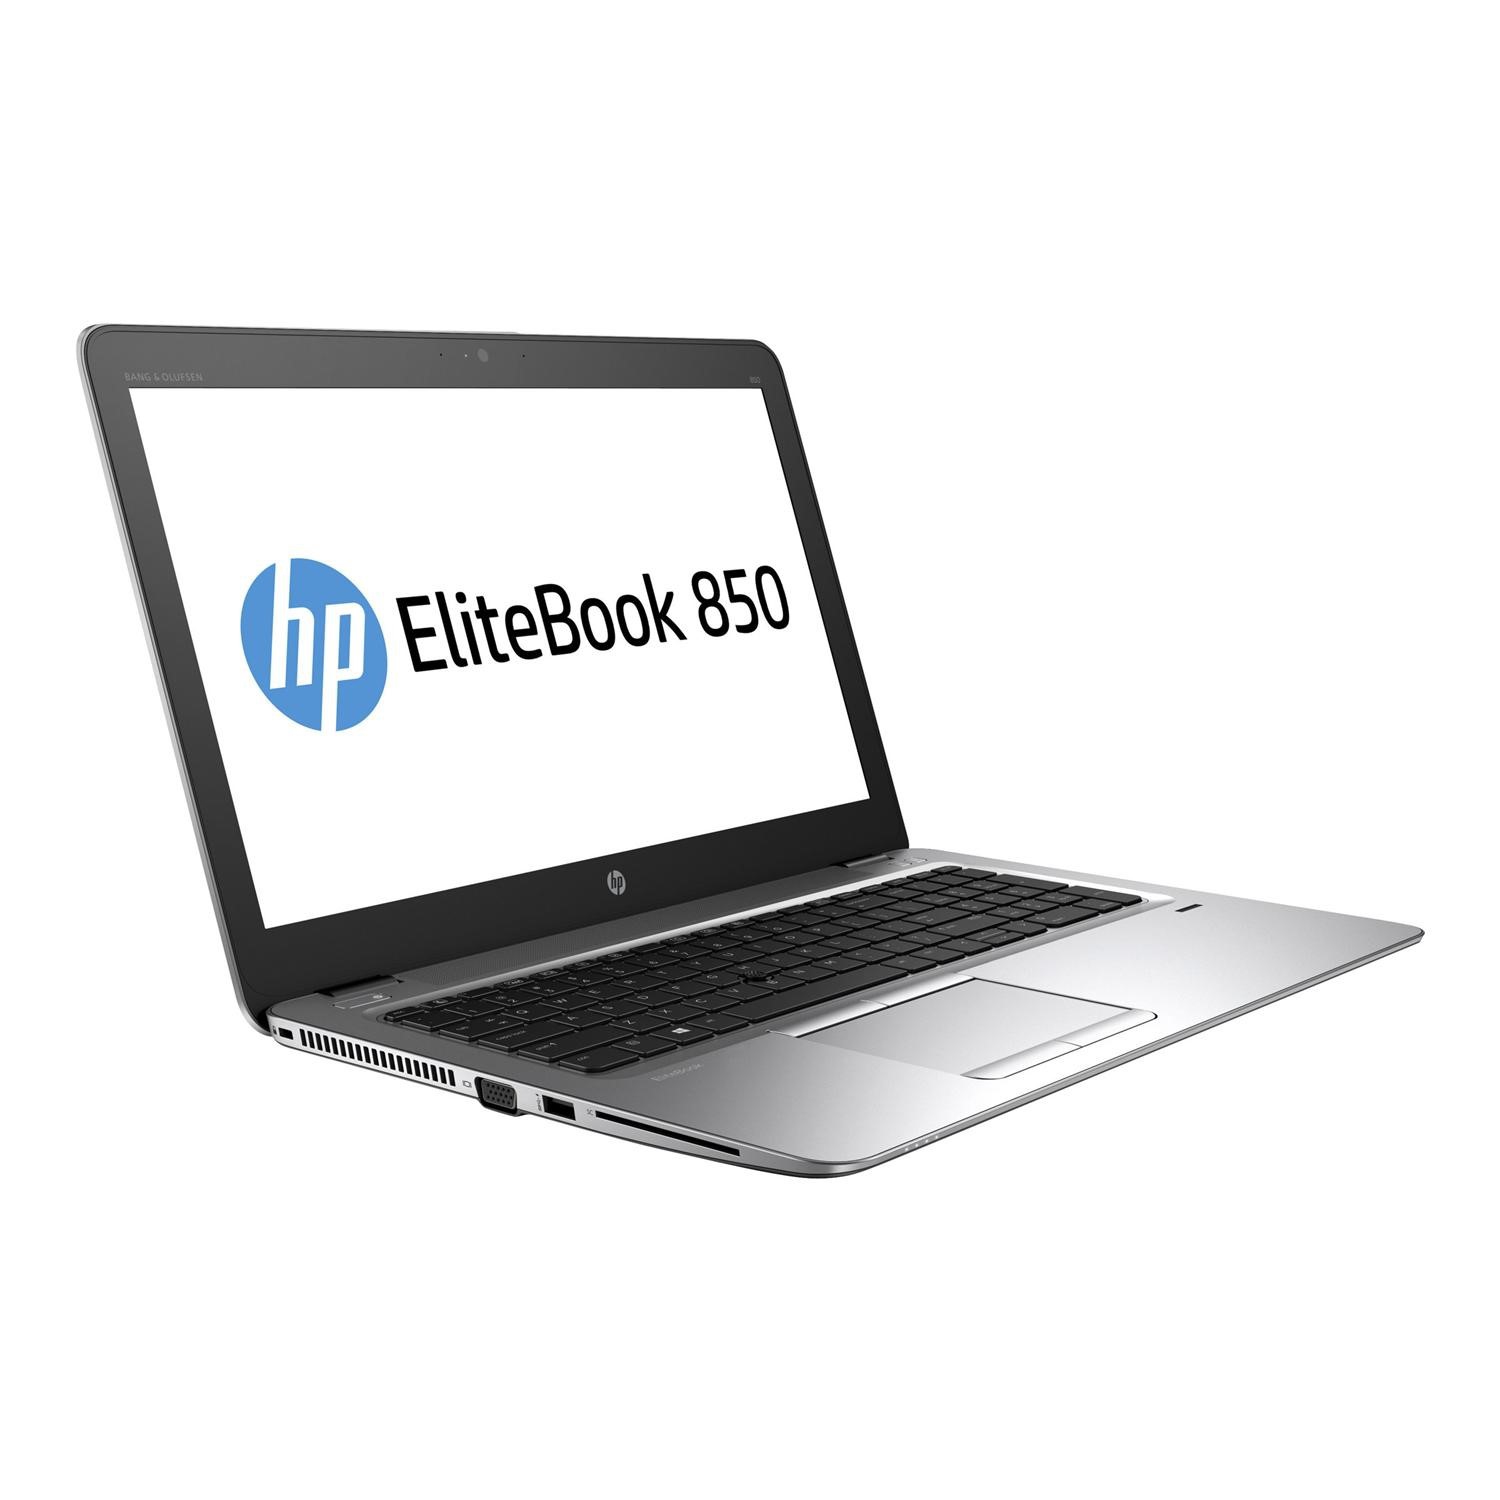 Refurbished (Good) - HP EliteBook 850 G3, 15.6" Screen, Intel i5-6300U, 16GB DDR4, SUPER FAST 256GB M.2 SSD, Windows 10 Pro.